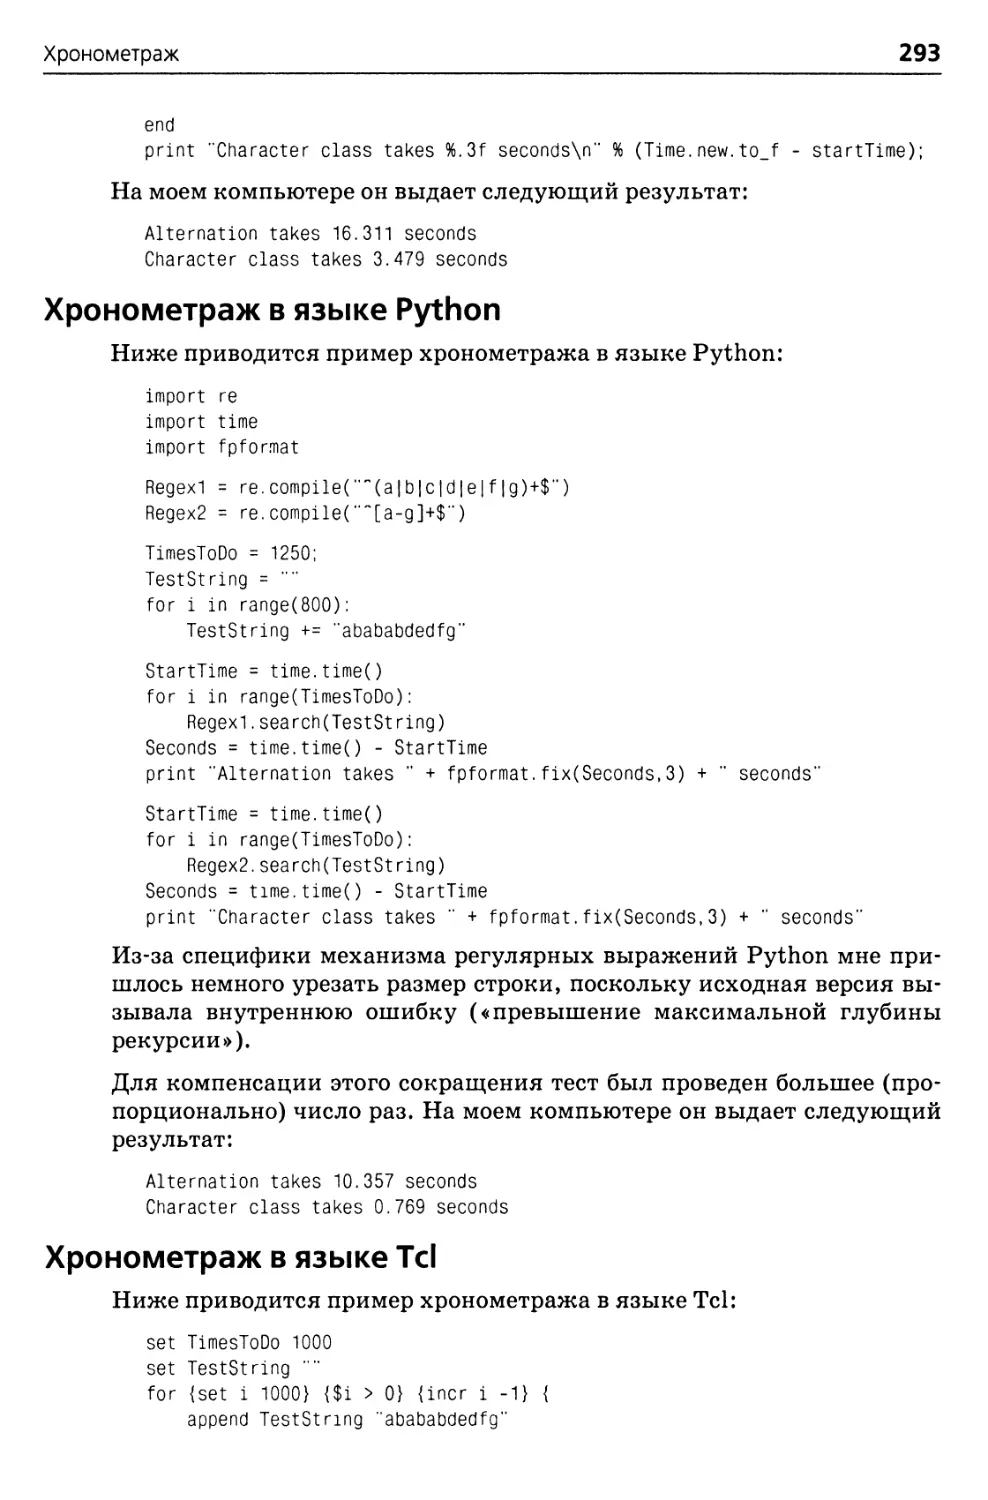 Хронометраж в языке Python
Хронометраж в языке Tel